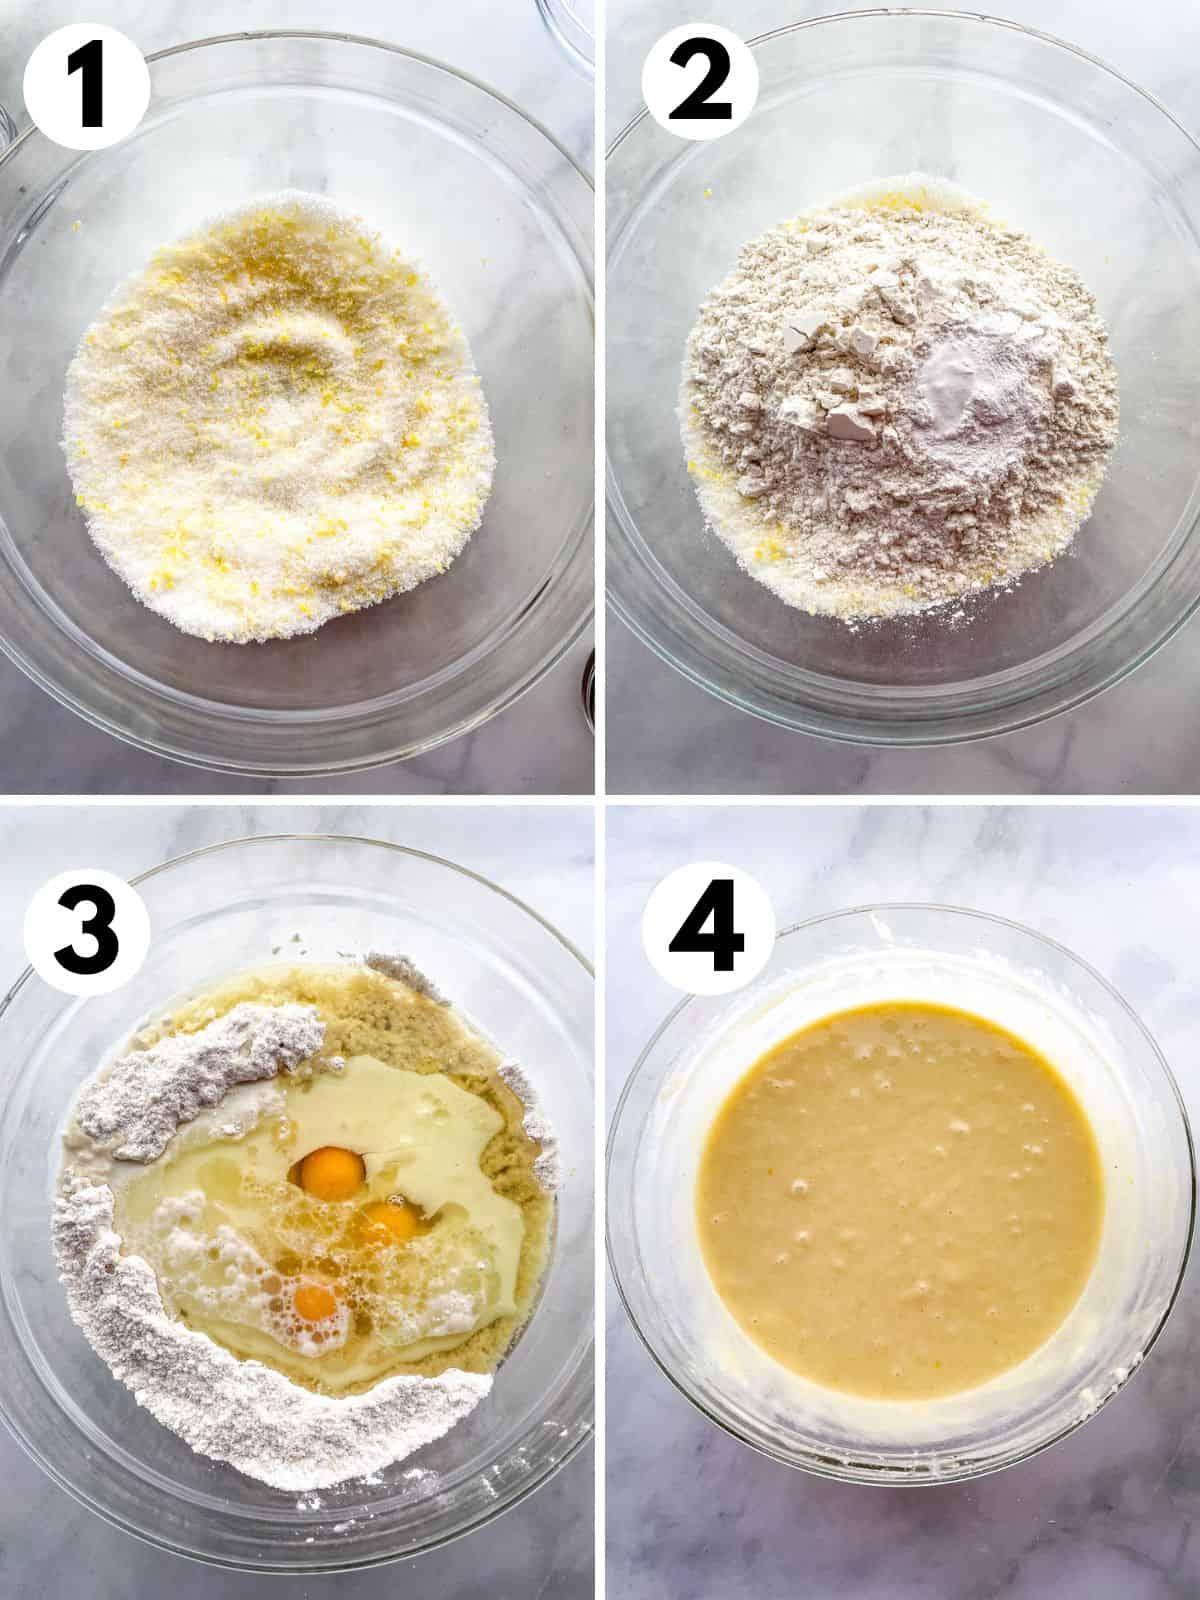 Steps for making gluten-free lemon cake batter. 1. Homemade lemon sugar in a bowl. 2. Dry ingredients. 3. Wet and dry ingredients in the bowl. 4. Mixed batter.